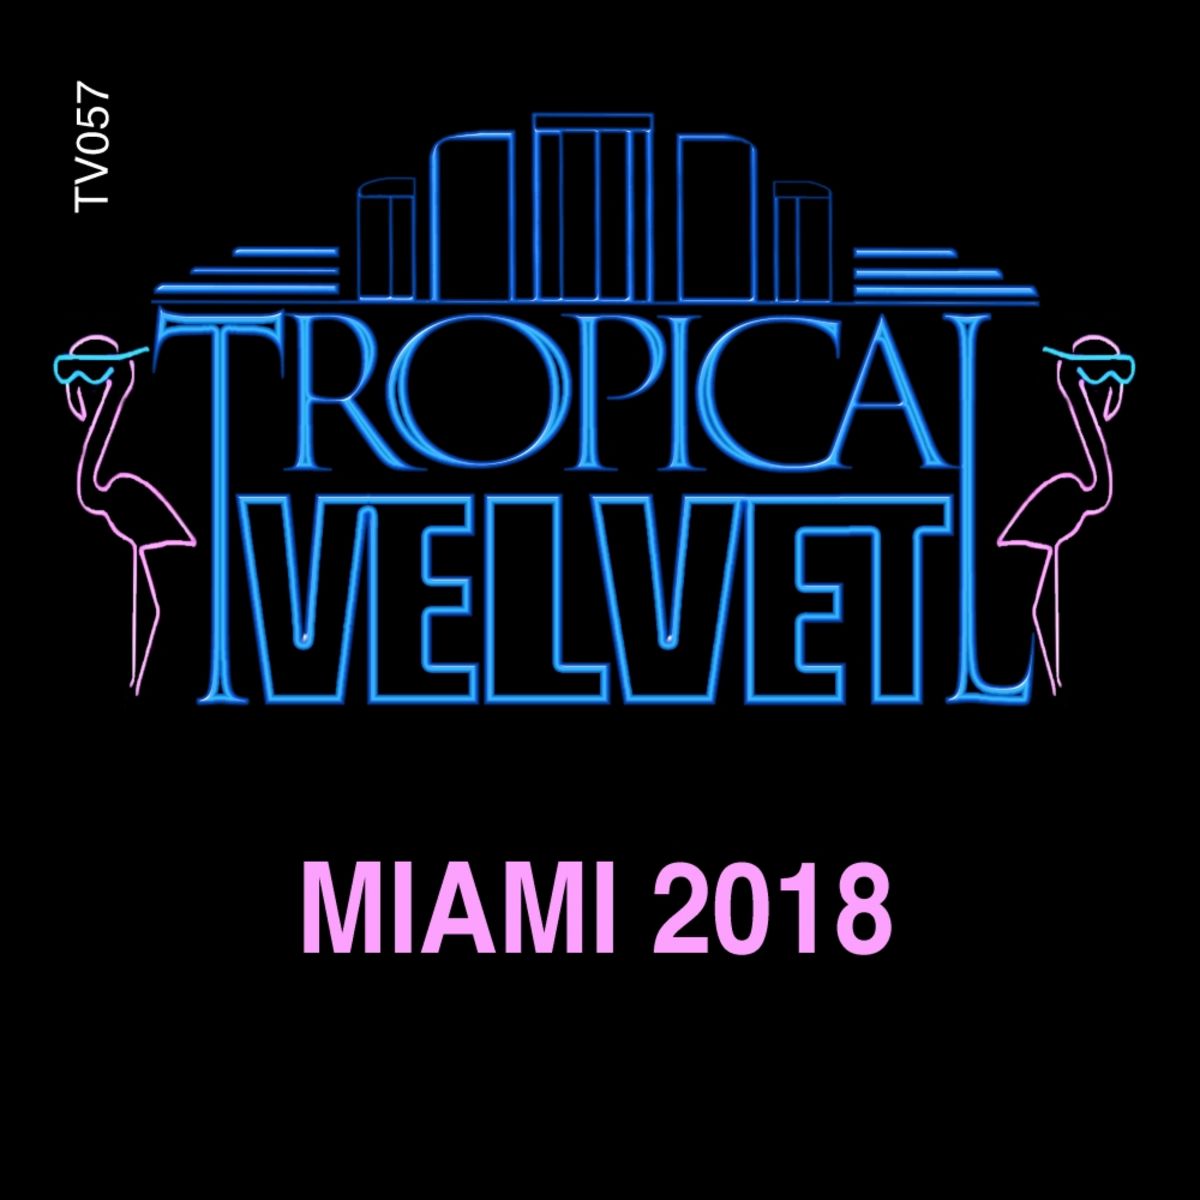 VA - Tropical Velvet Miami 2018 / Tropical Velvet